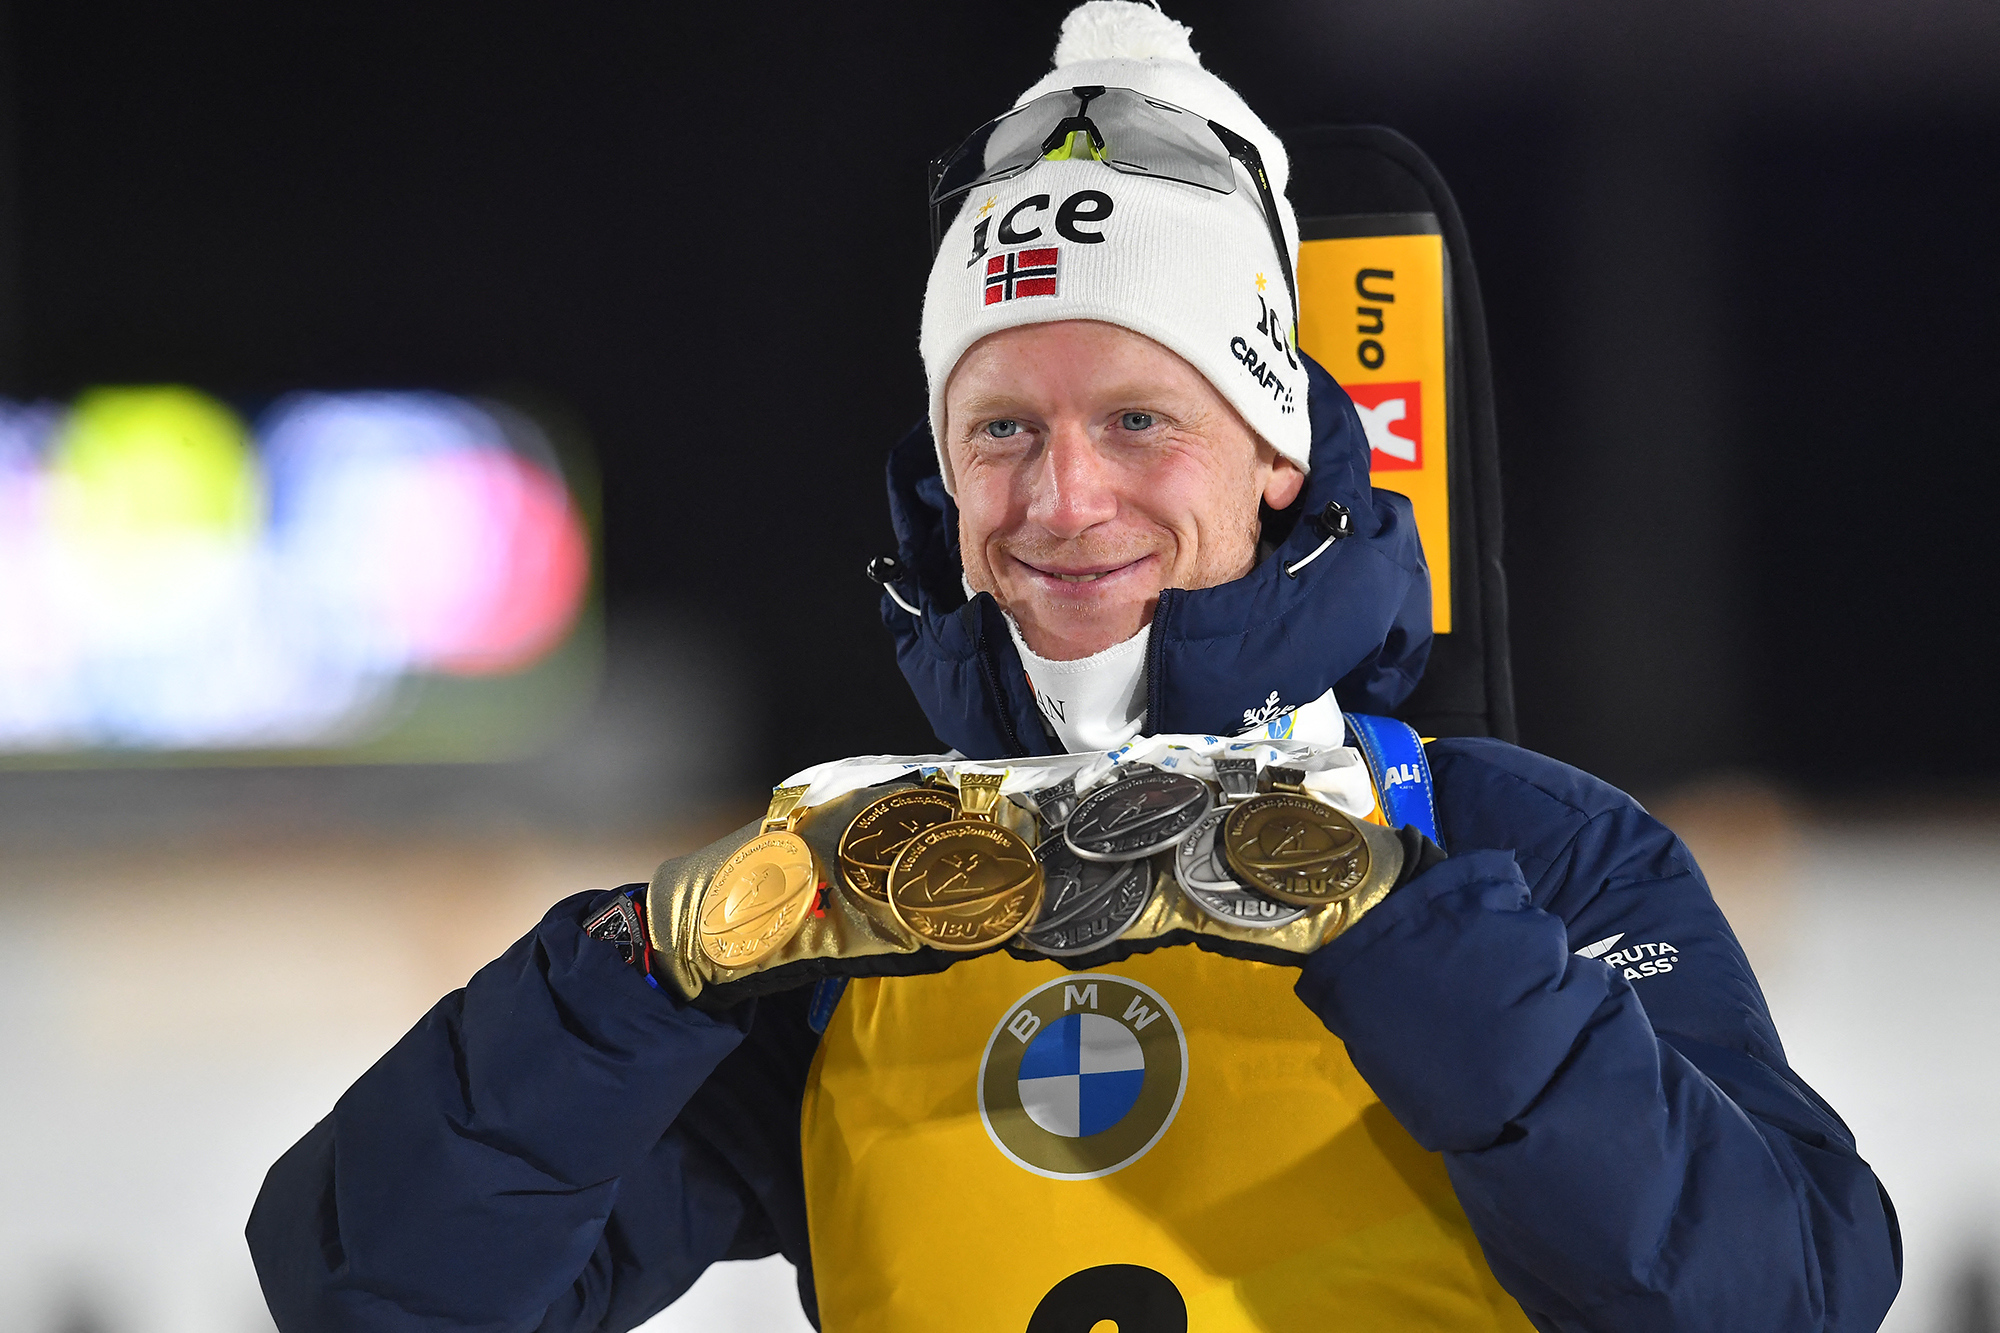 Johannes Thingnes Bö mit seiner Medaillenausbeute (Bild: Michal Cizek/AFP)